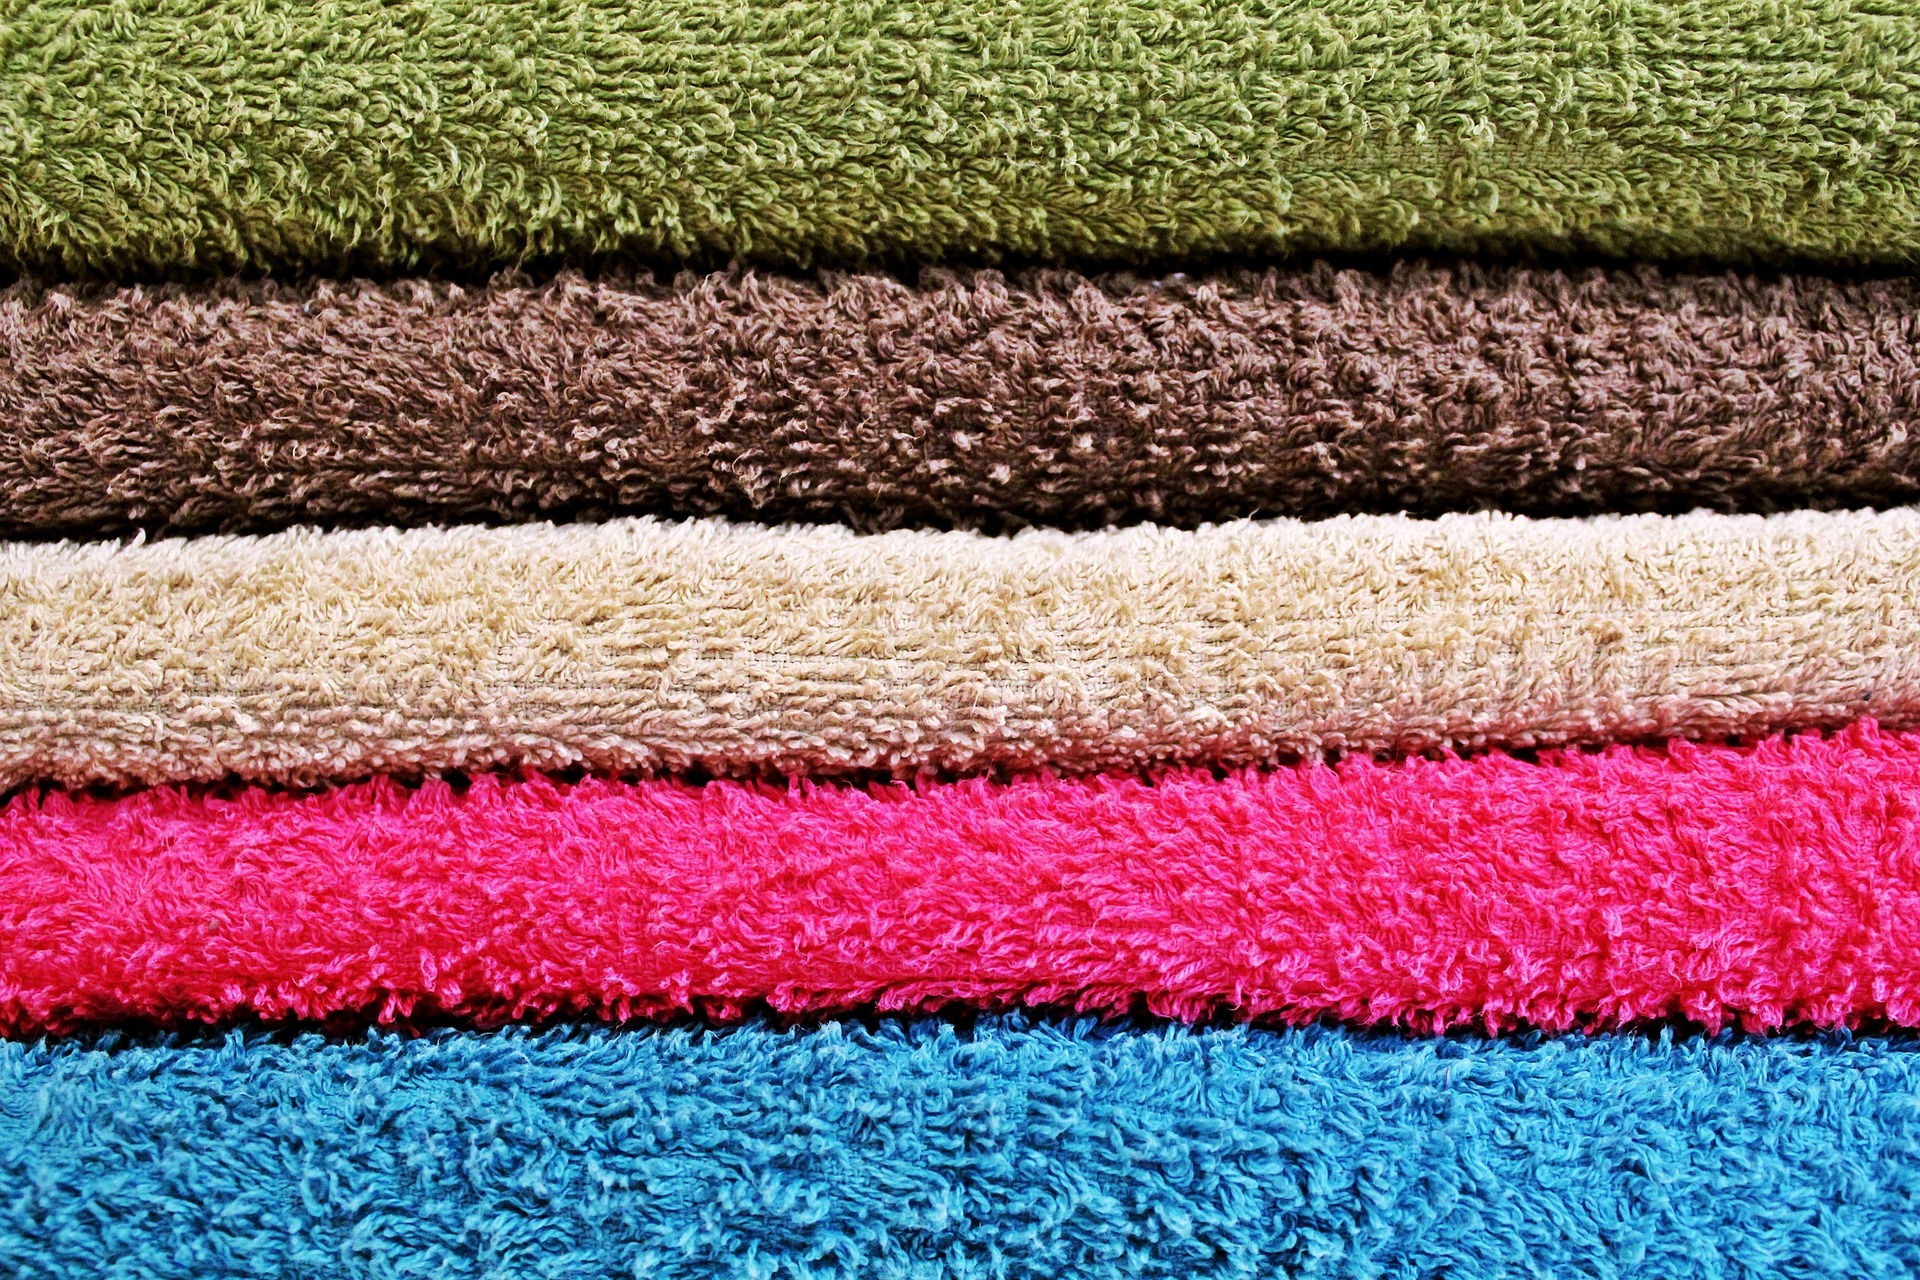 Jak vybrat kvalitní osušku či ručník. Na co se zaměřit při jejich výběru?